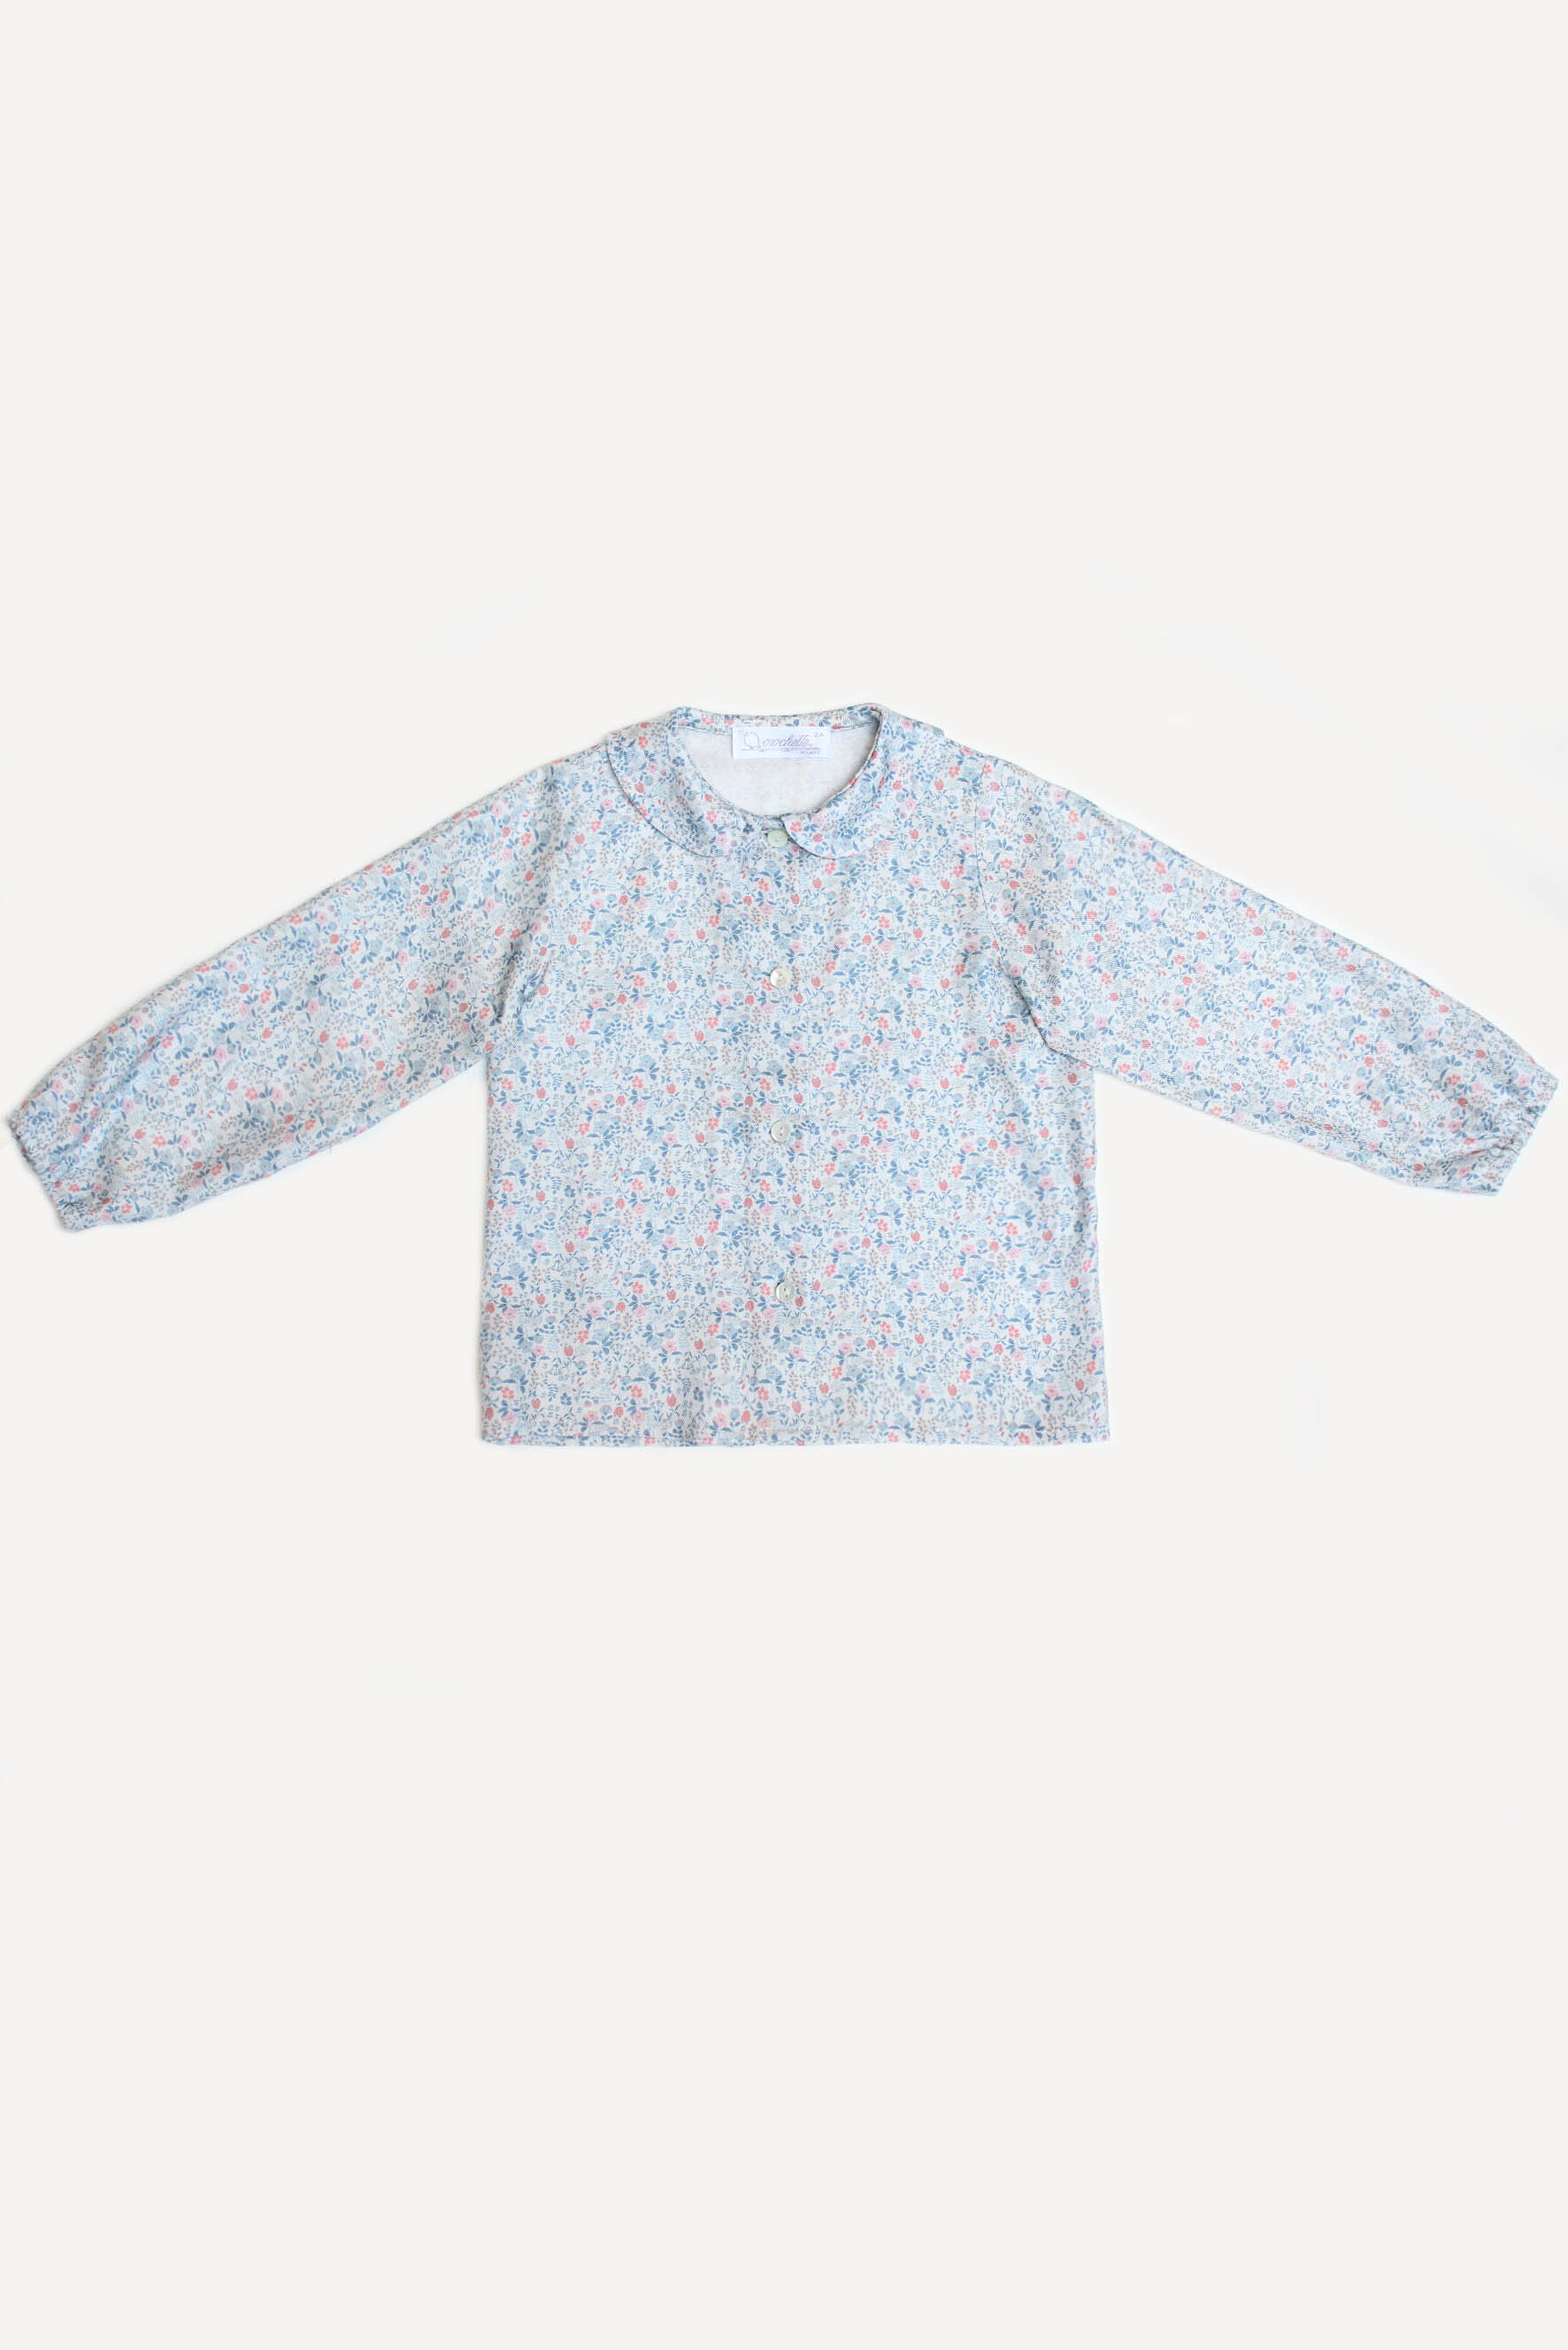 Camicia bambina con fiori avio e corallo